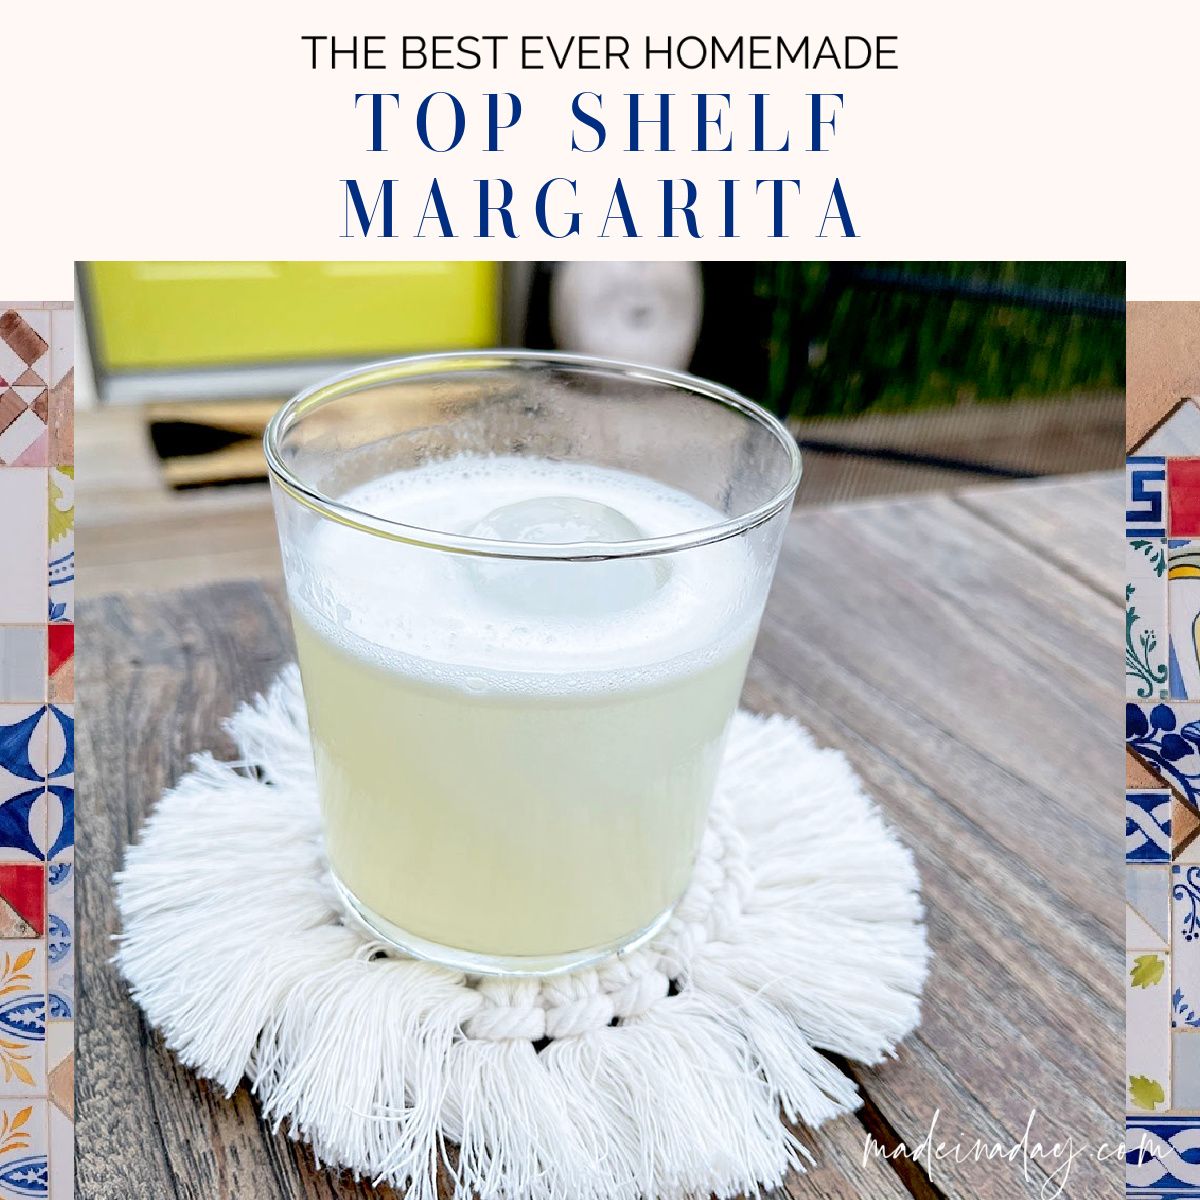 Best Homemade Margarita Recipe From Scratch